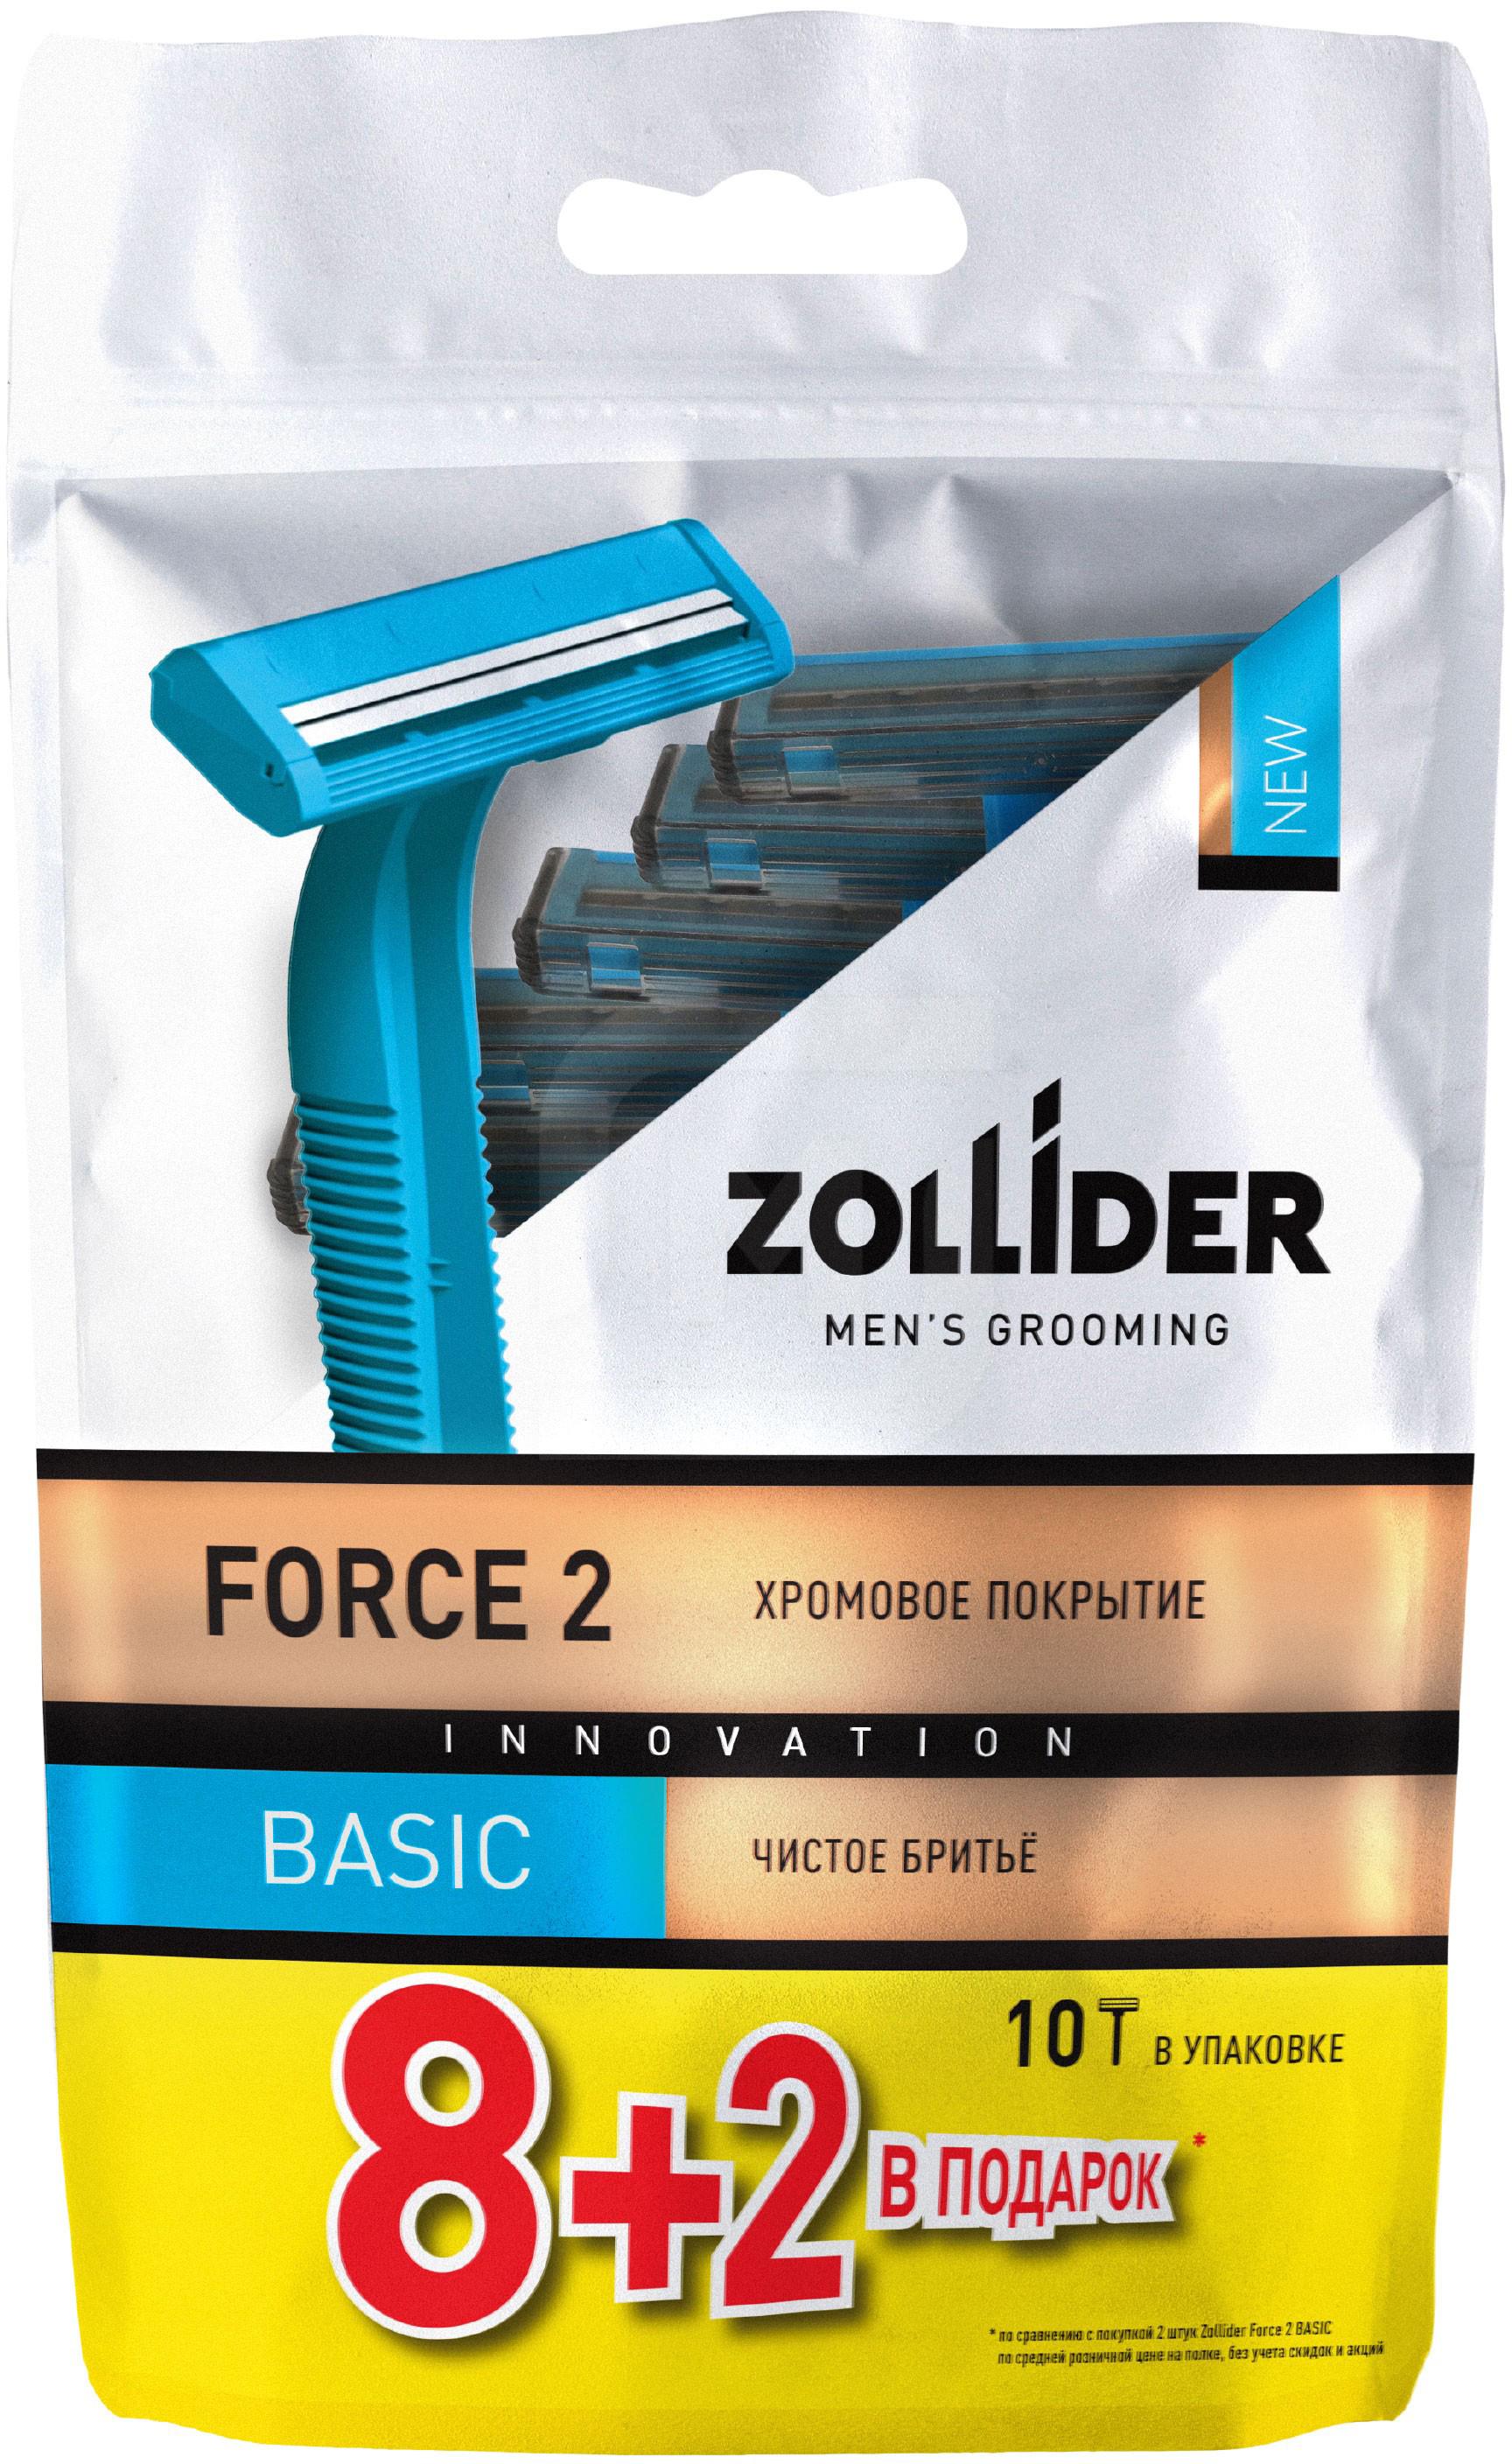 Бритвенные станки мужские Zollider Force 2 Basic одноразовые с двойными лезвиями 8 + 2 шт derby станки бритвенные одноразовые с тройным лезвием